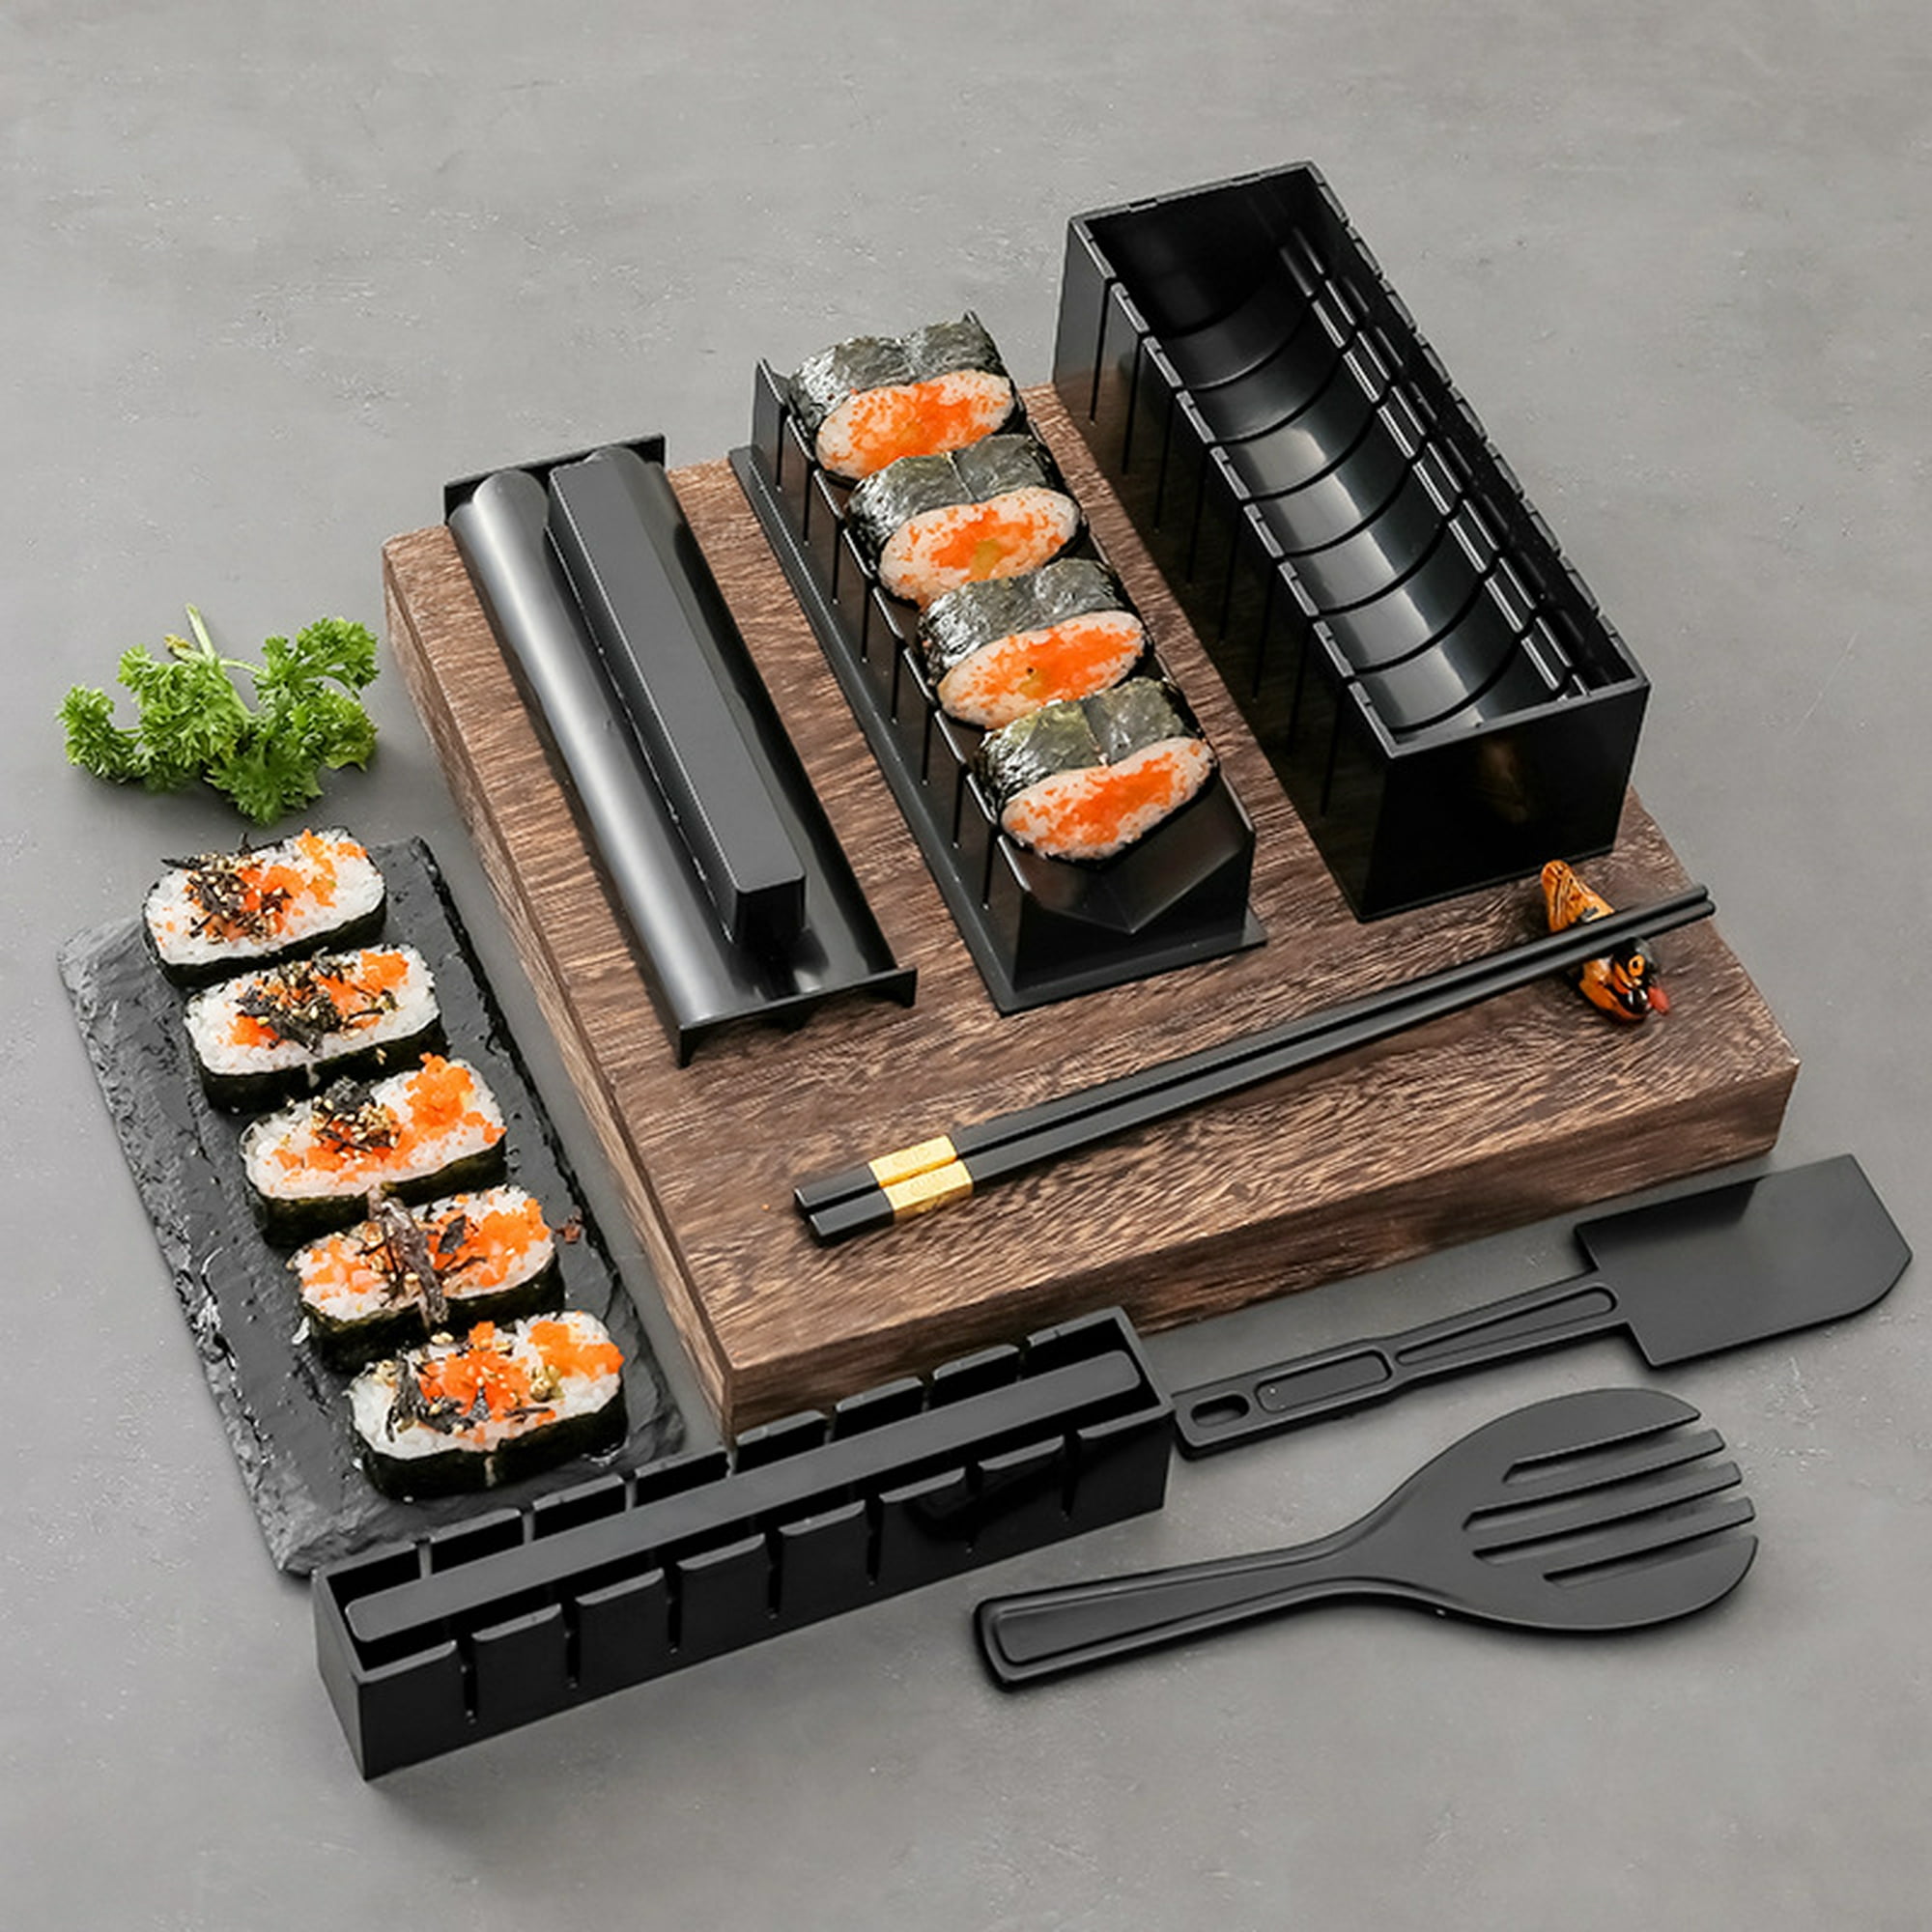 Kit para Hacer Sushi,11piezas Fabricante de Sushi Juego de Herramientas de Sushi  Kit Completo para Hacer Sushi con Sushi Maker,8 Moldes,Tenedor y Espátula  para Arroz,Cuchillo,Fácil de Limpiar y Usar : : Hogar